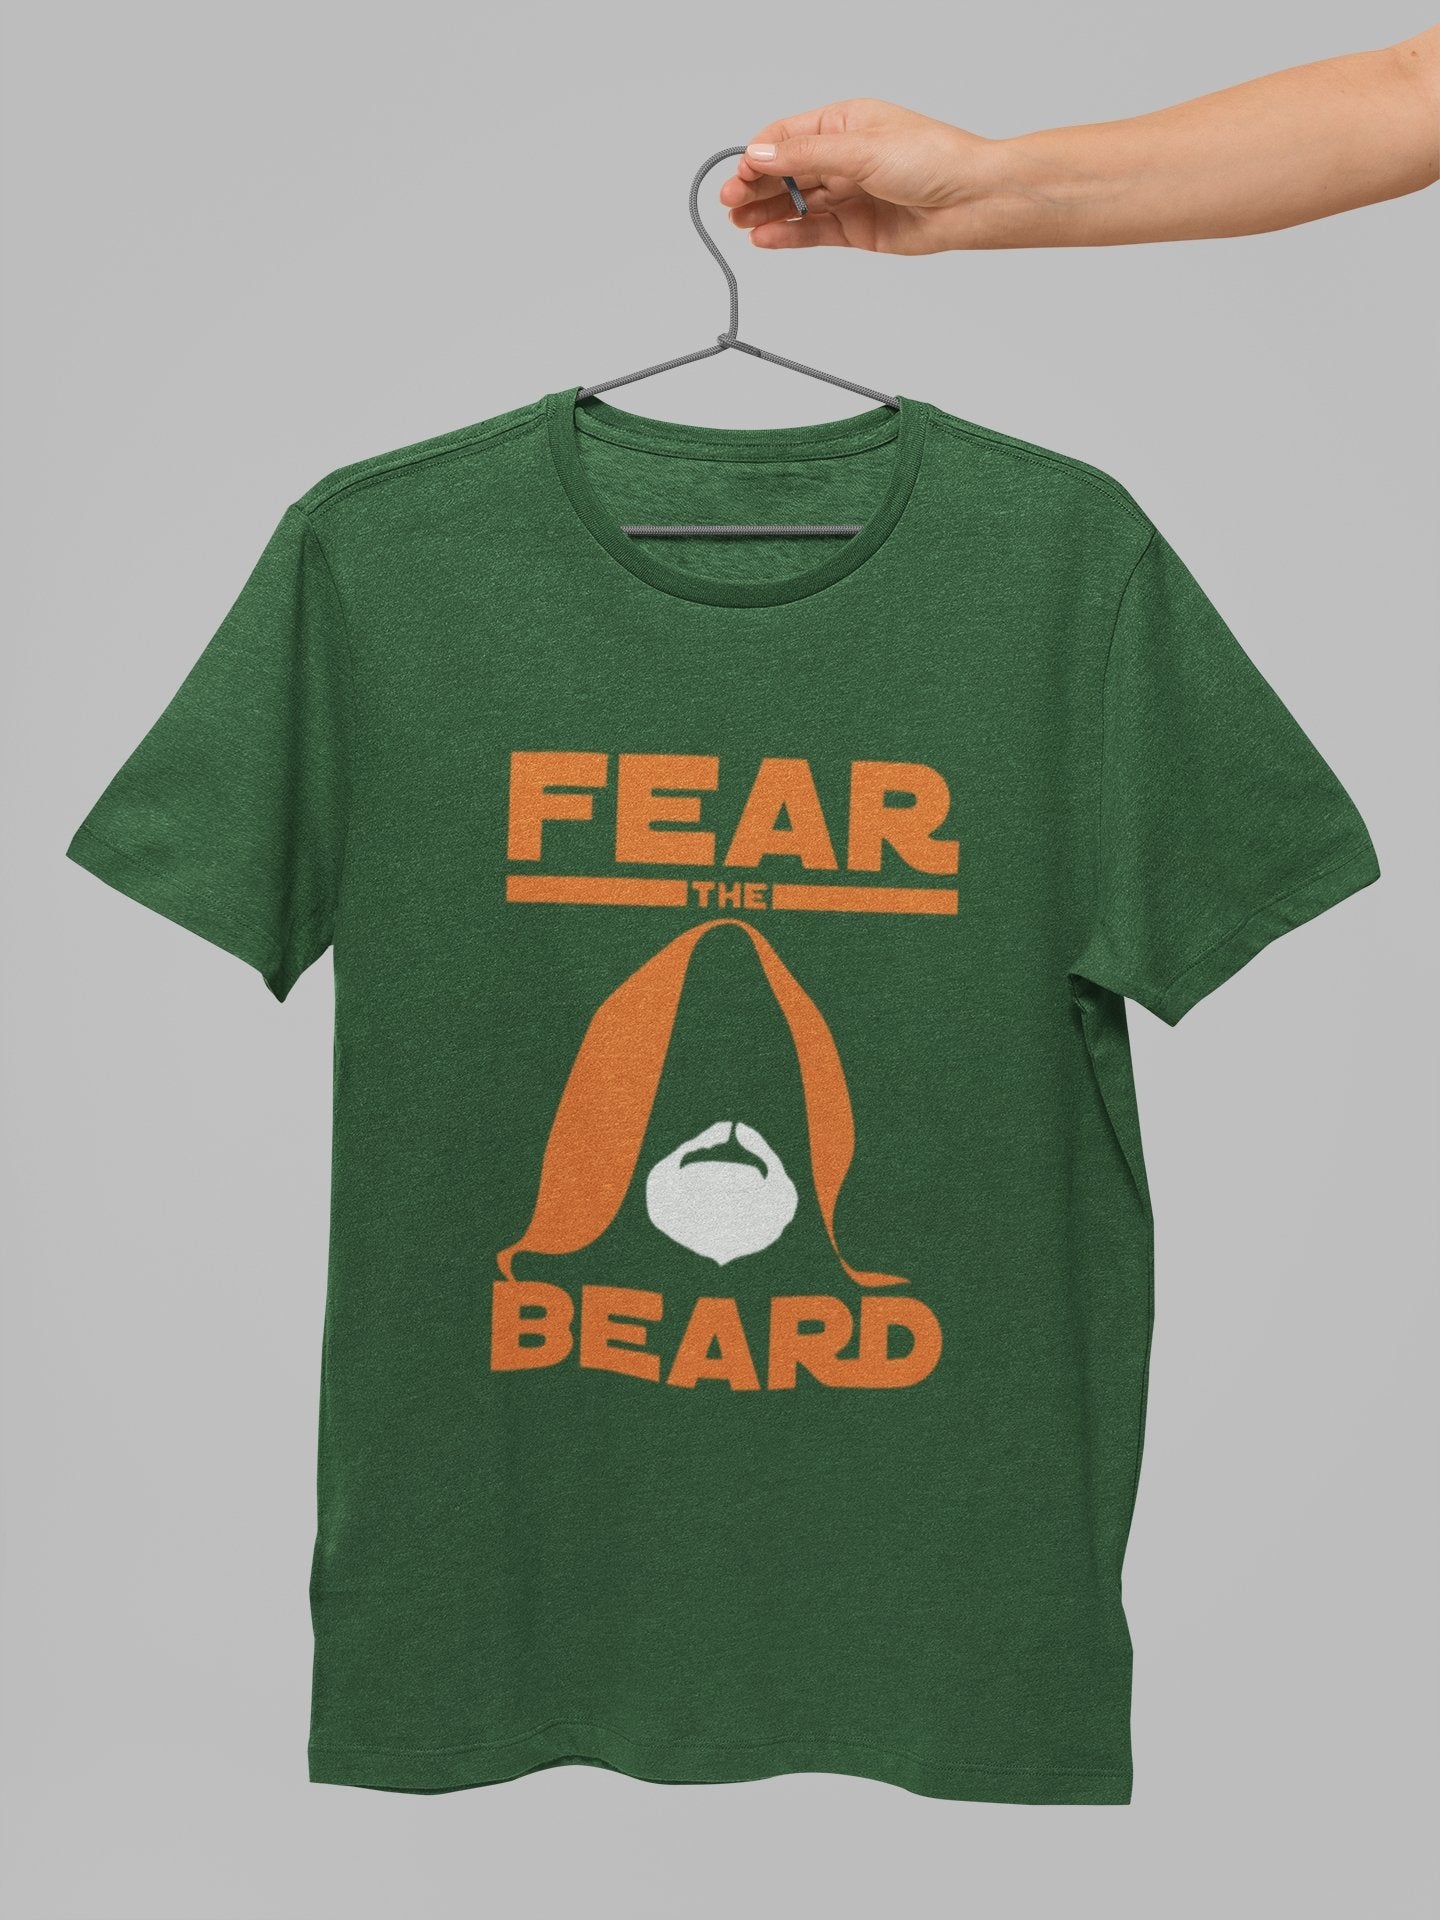 thelegalgang,Star Wars Fear The Beard T Shirt for Bearded Men,MEN.